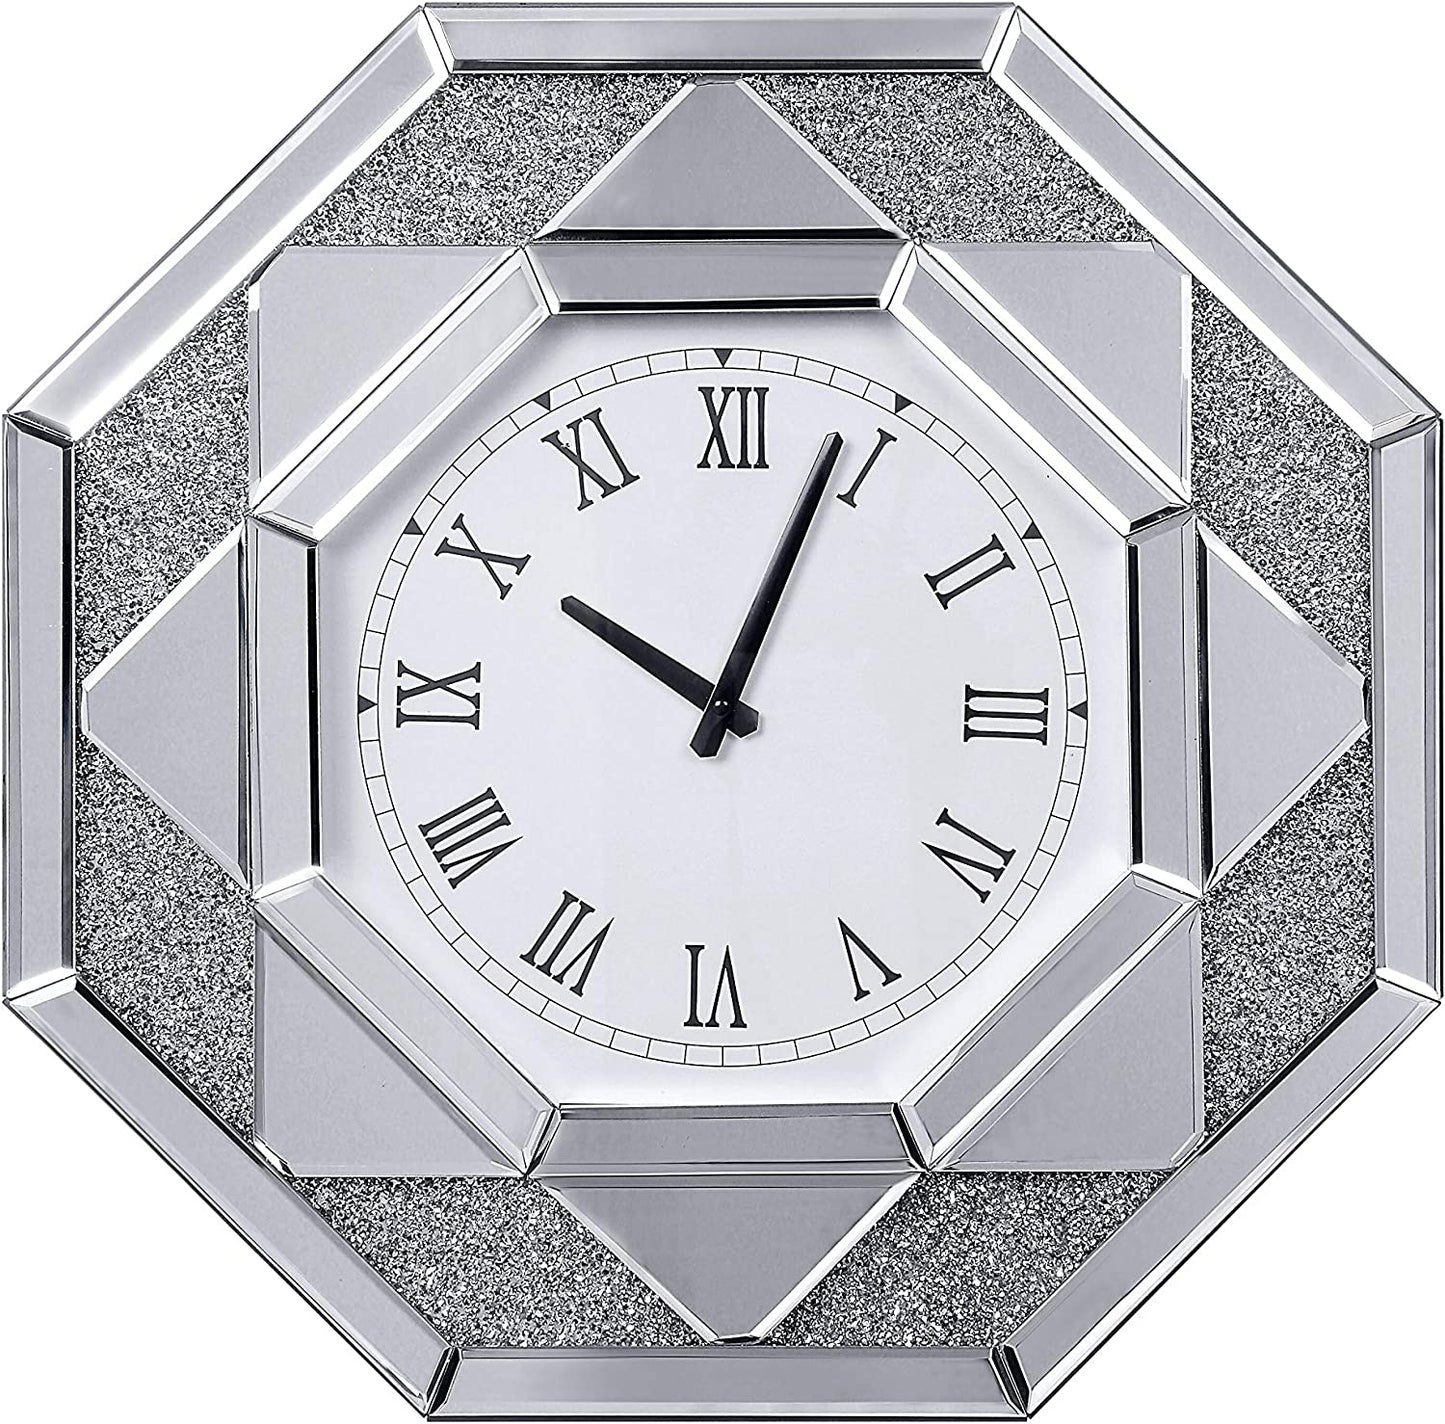 Maita Wall Clock